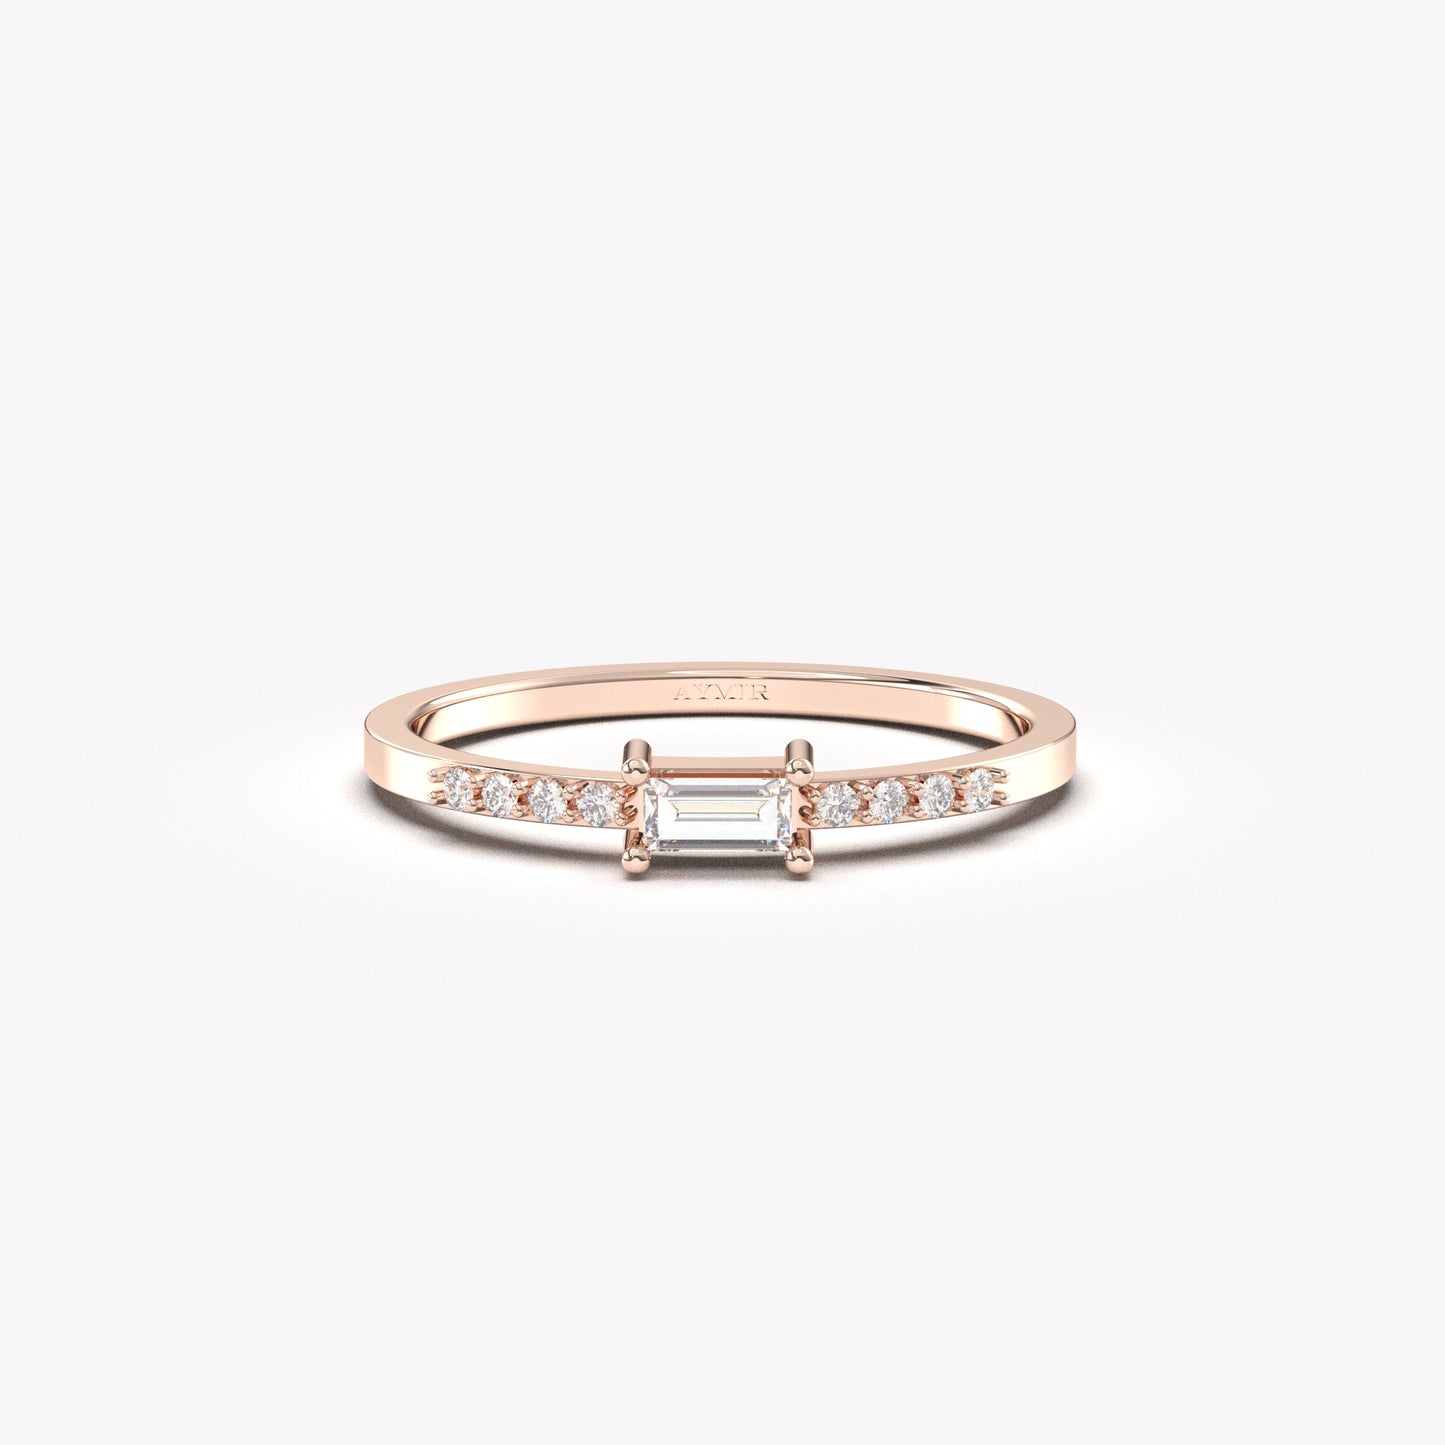 10K Gold Baguette Diamond Ring - 2S2DIA